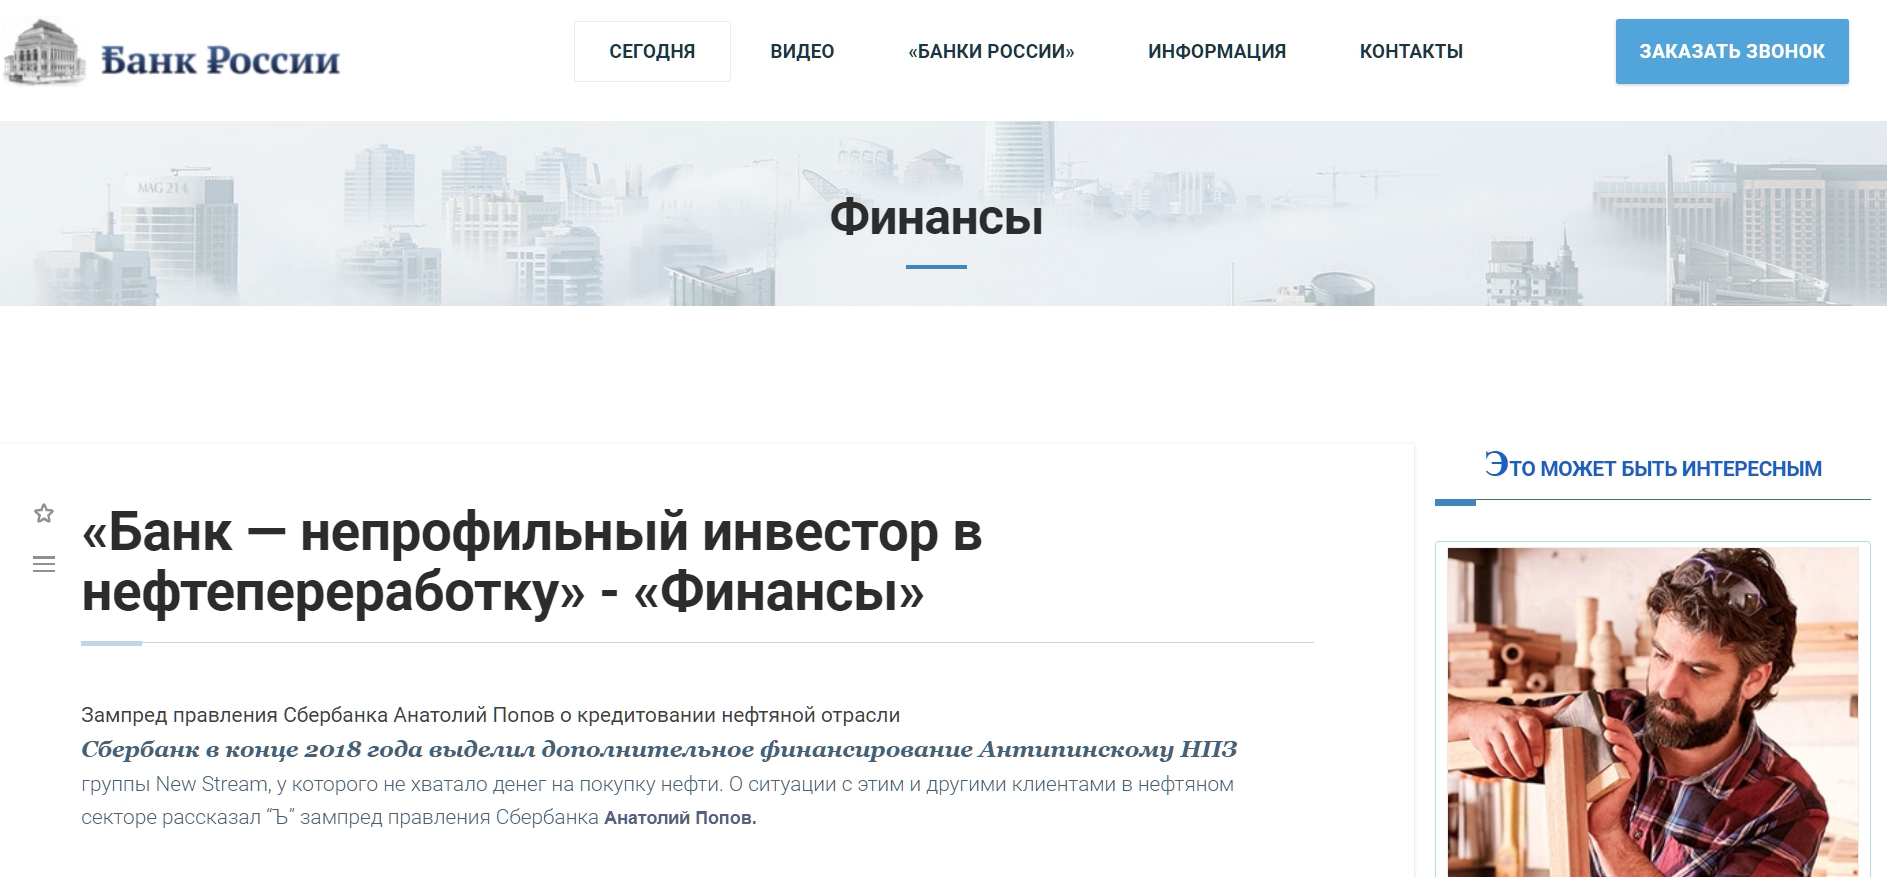 novosti-bankov.ru - ������� ������ ������